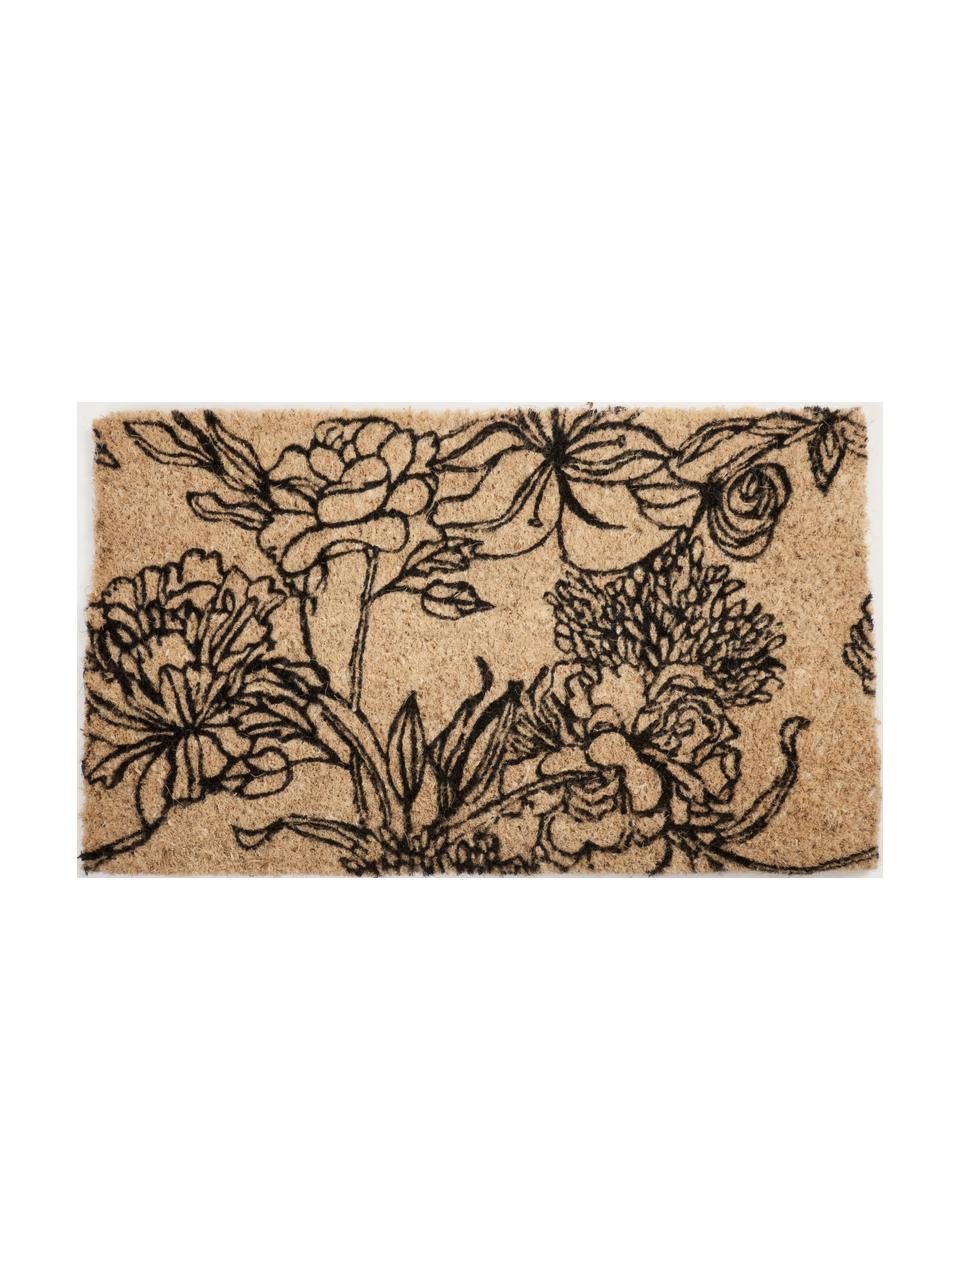 Fußmatte Ink Bouquet aus Kokusfaser mit Blumendruck, Kokosfaser, Schwarz, 45 x 75 cm